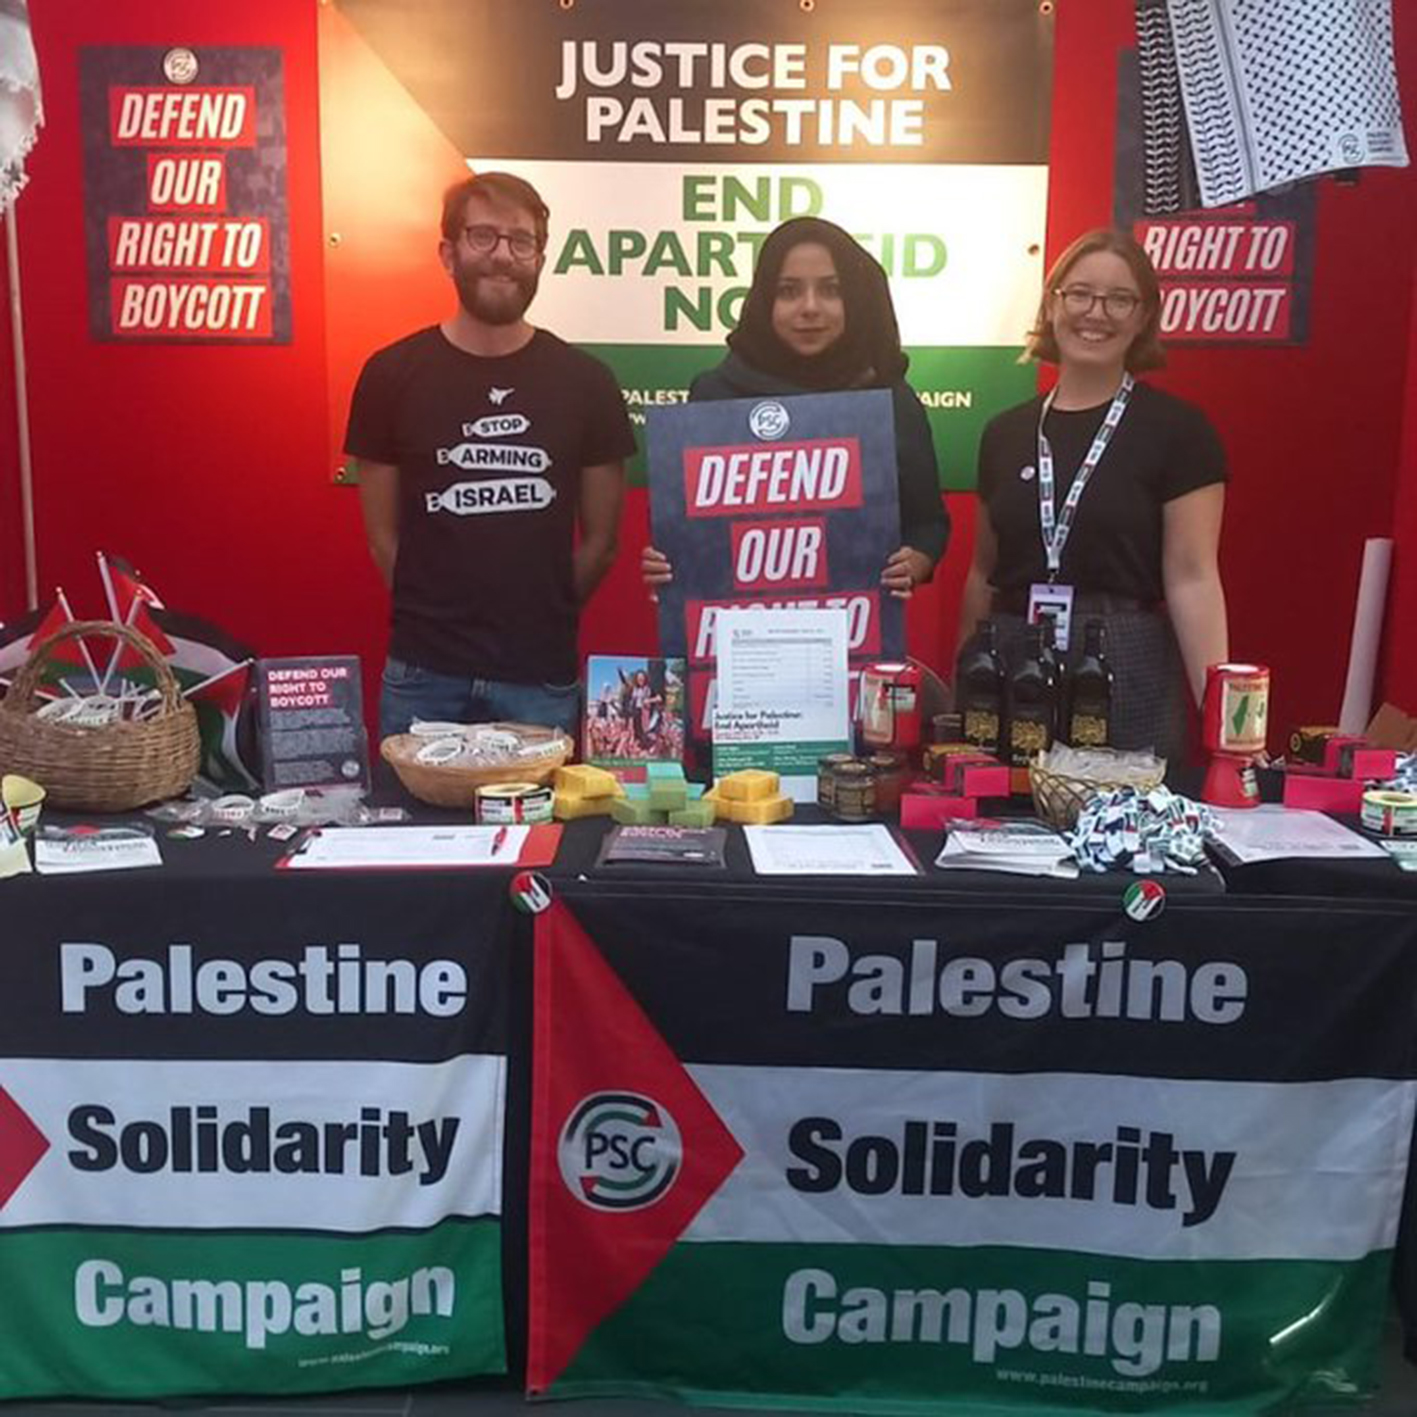 Die Labour-Abgeordnete Apsana Begum wurde angegriffen, weil sie sich für die Palästinensische Solidaritätskampagne ausgab